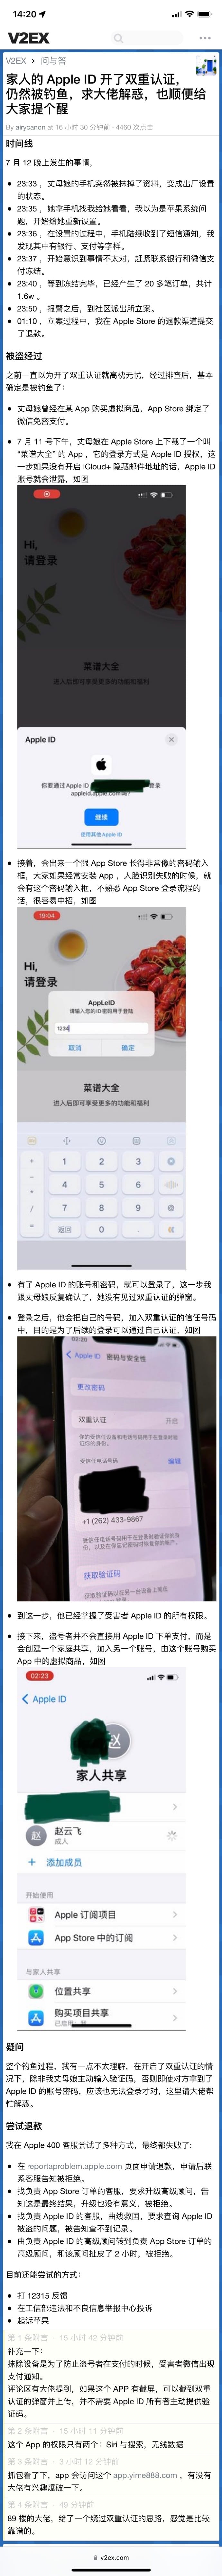 苹果 iPhone 重大漏洞曝光：开启 Apple ID 双重验证仍被盗刷